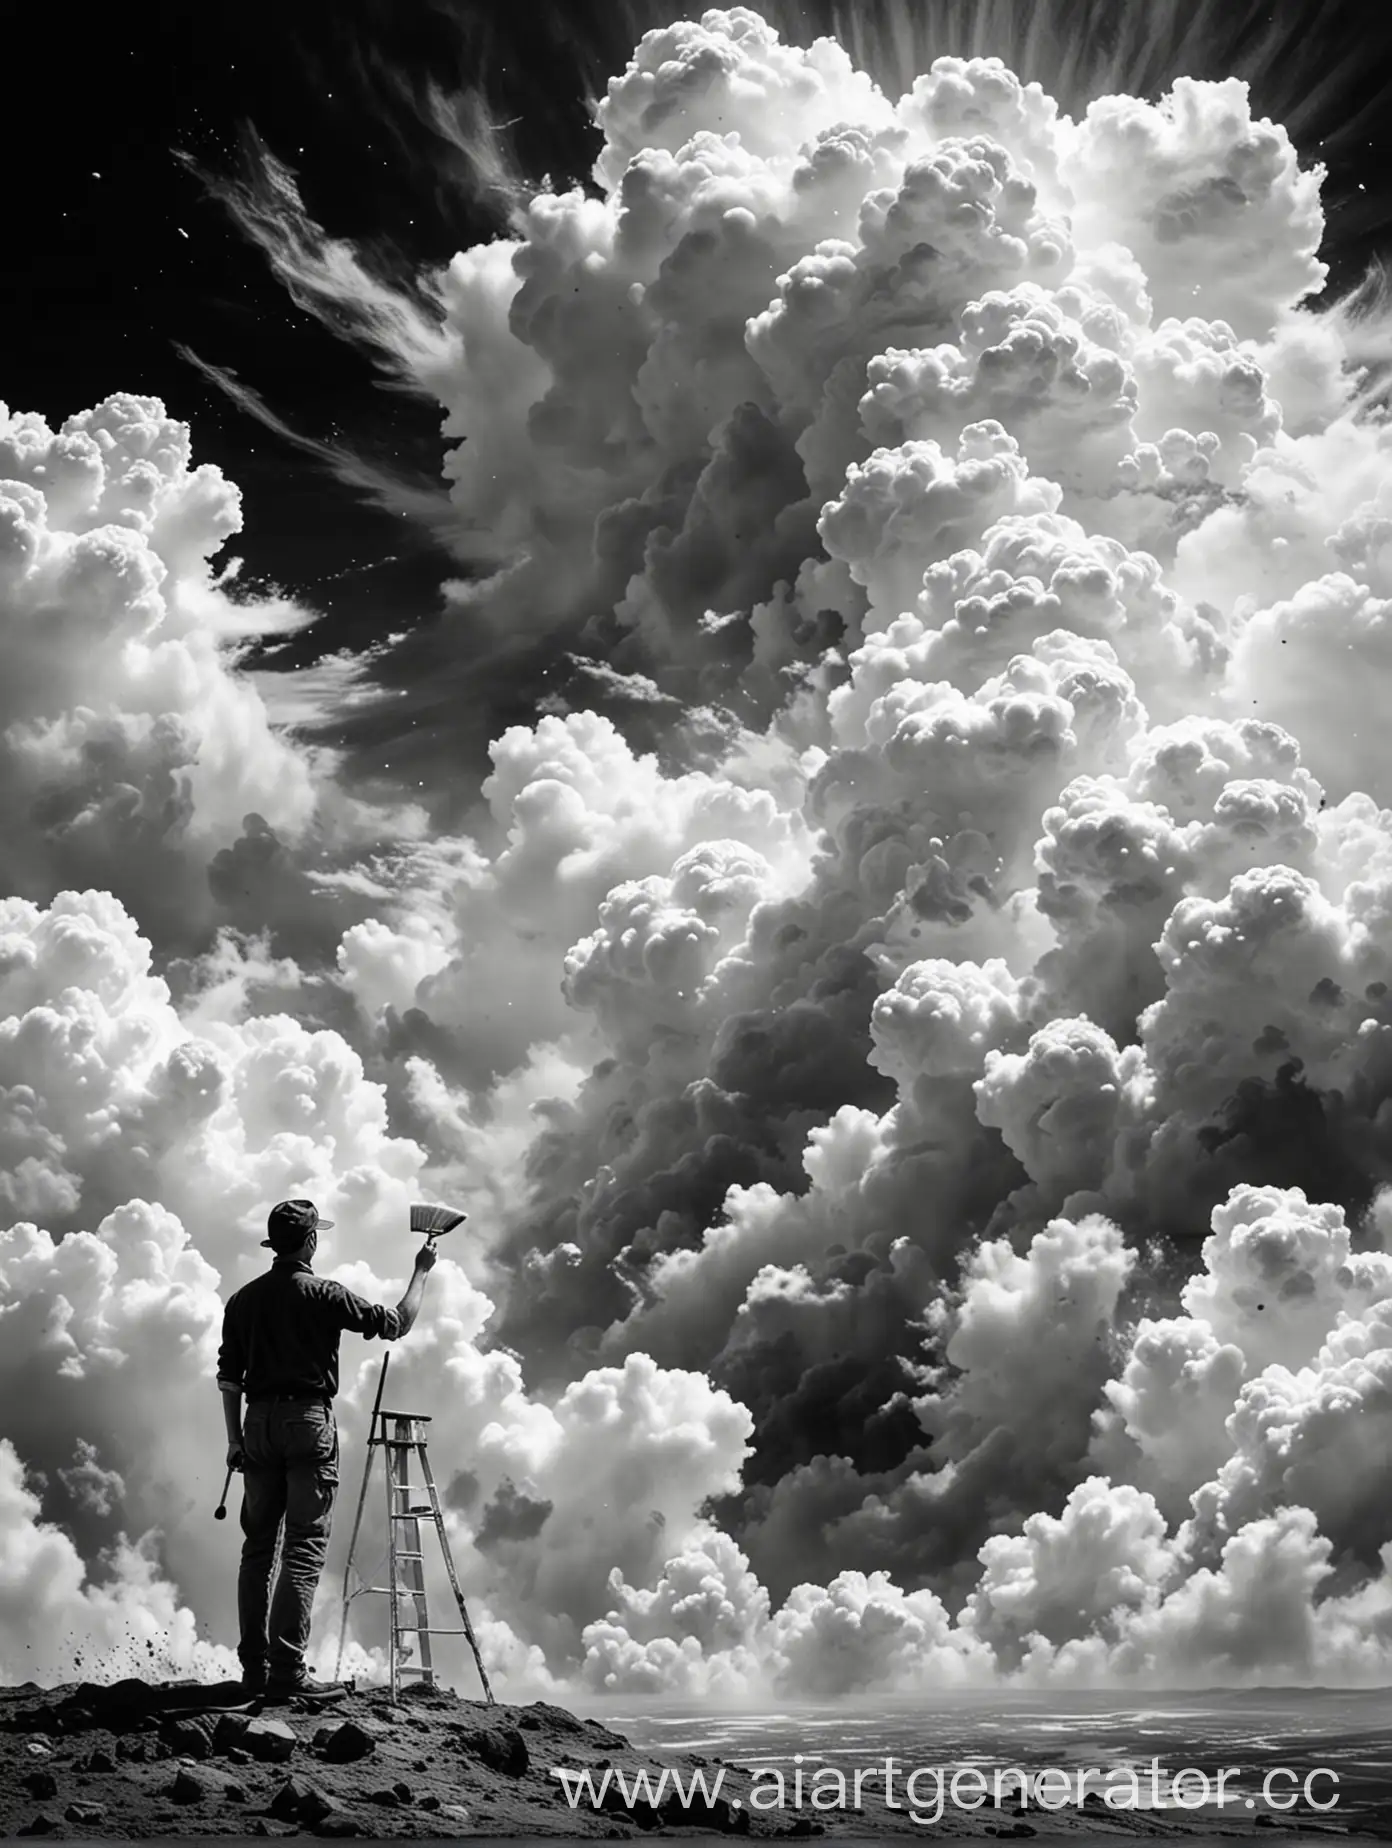 Чёрно белый постер, стоит человек с кистью и раскрашивает облака, часть облаков цветная, часть чёрно-белая